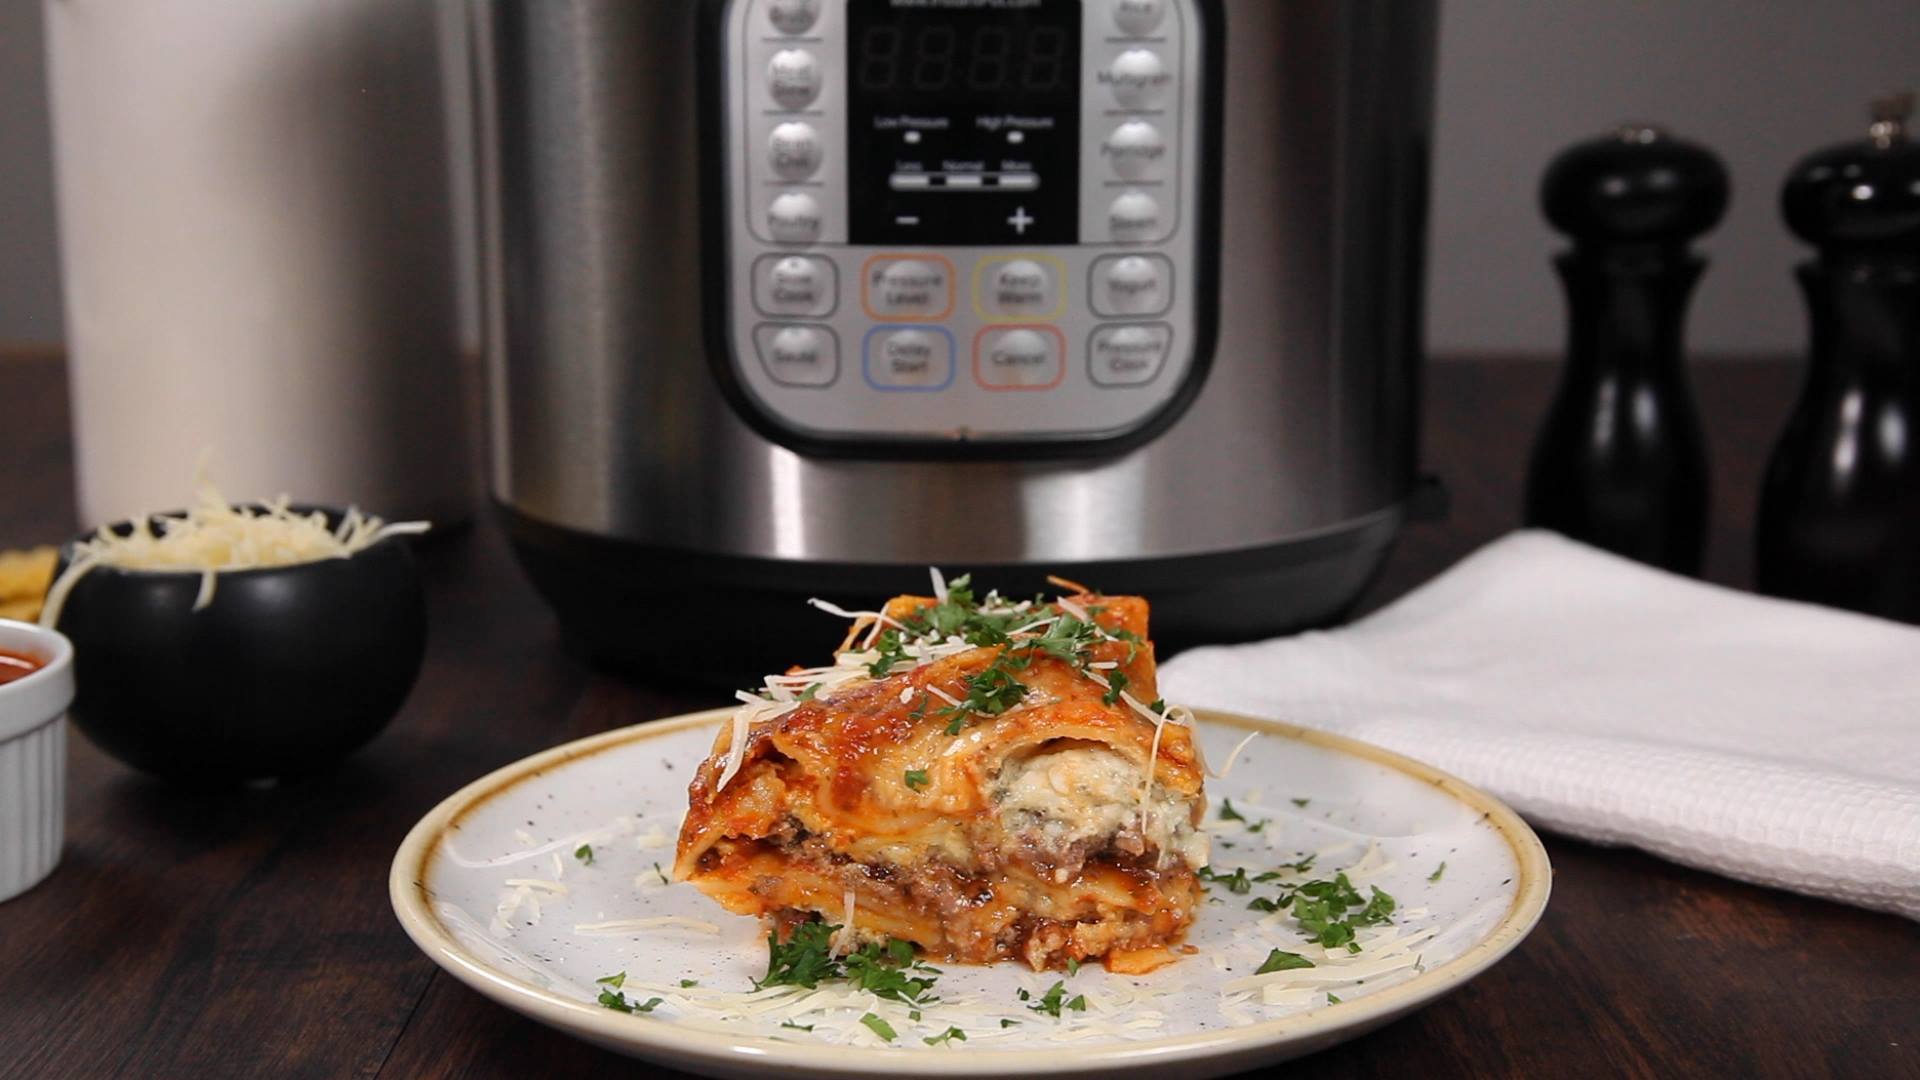 Instant Pot Hearty Meat Lasagna - Cooking TV Recipes.